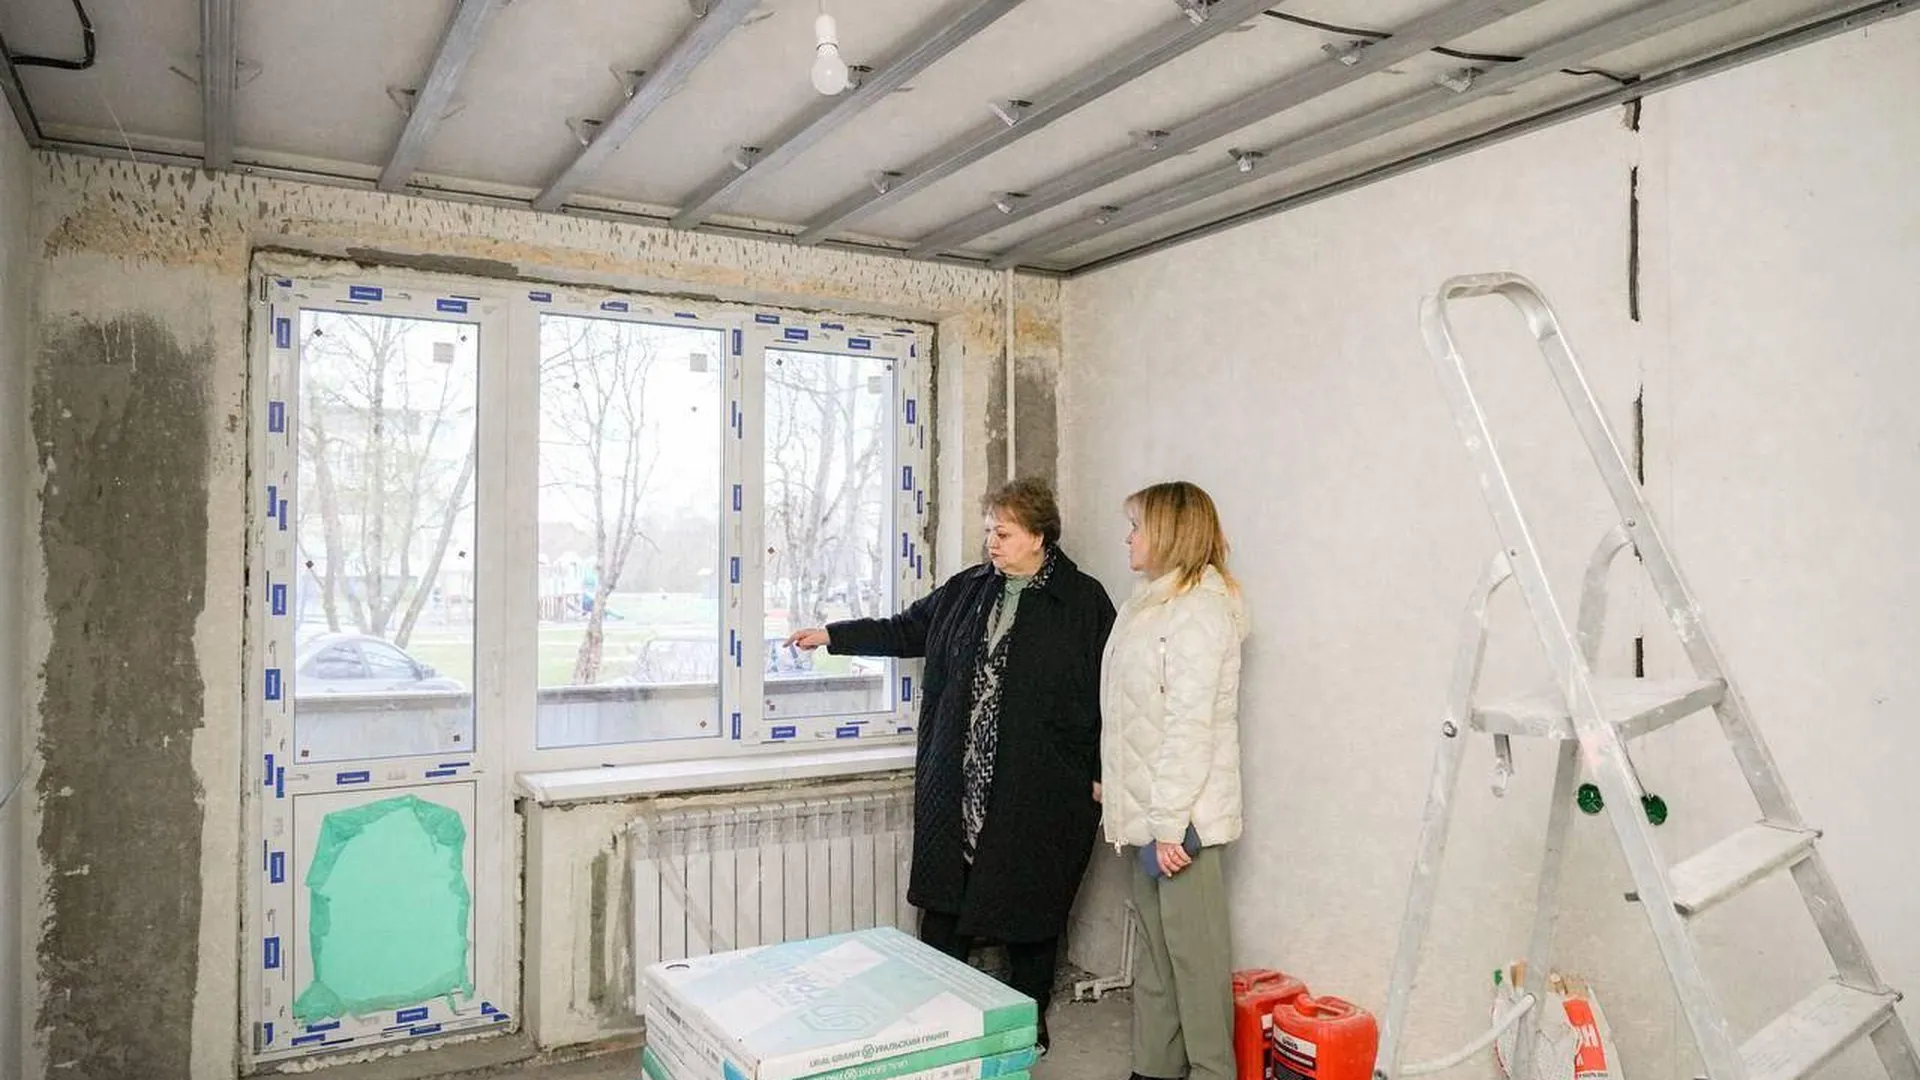 Глава округа Клин проверила ход ремонтных работ фельдшерско-акушерского пункта в Решоткино